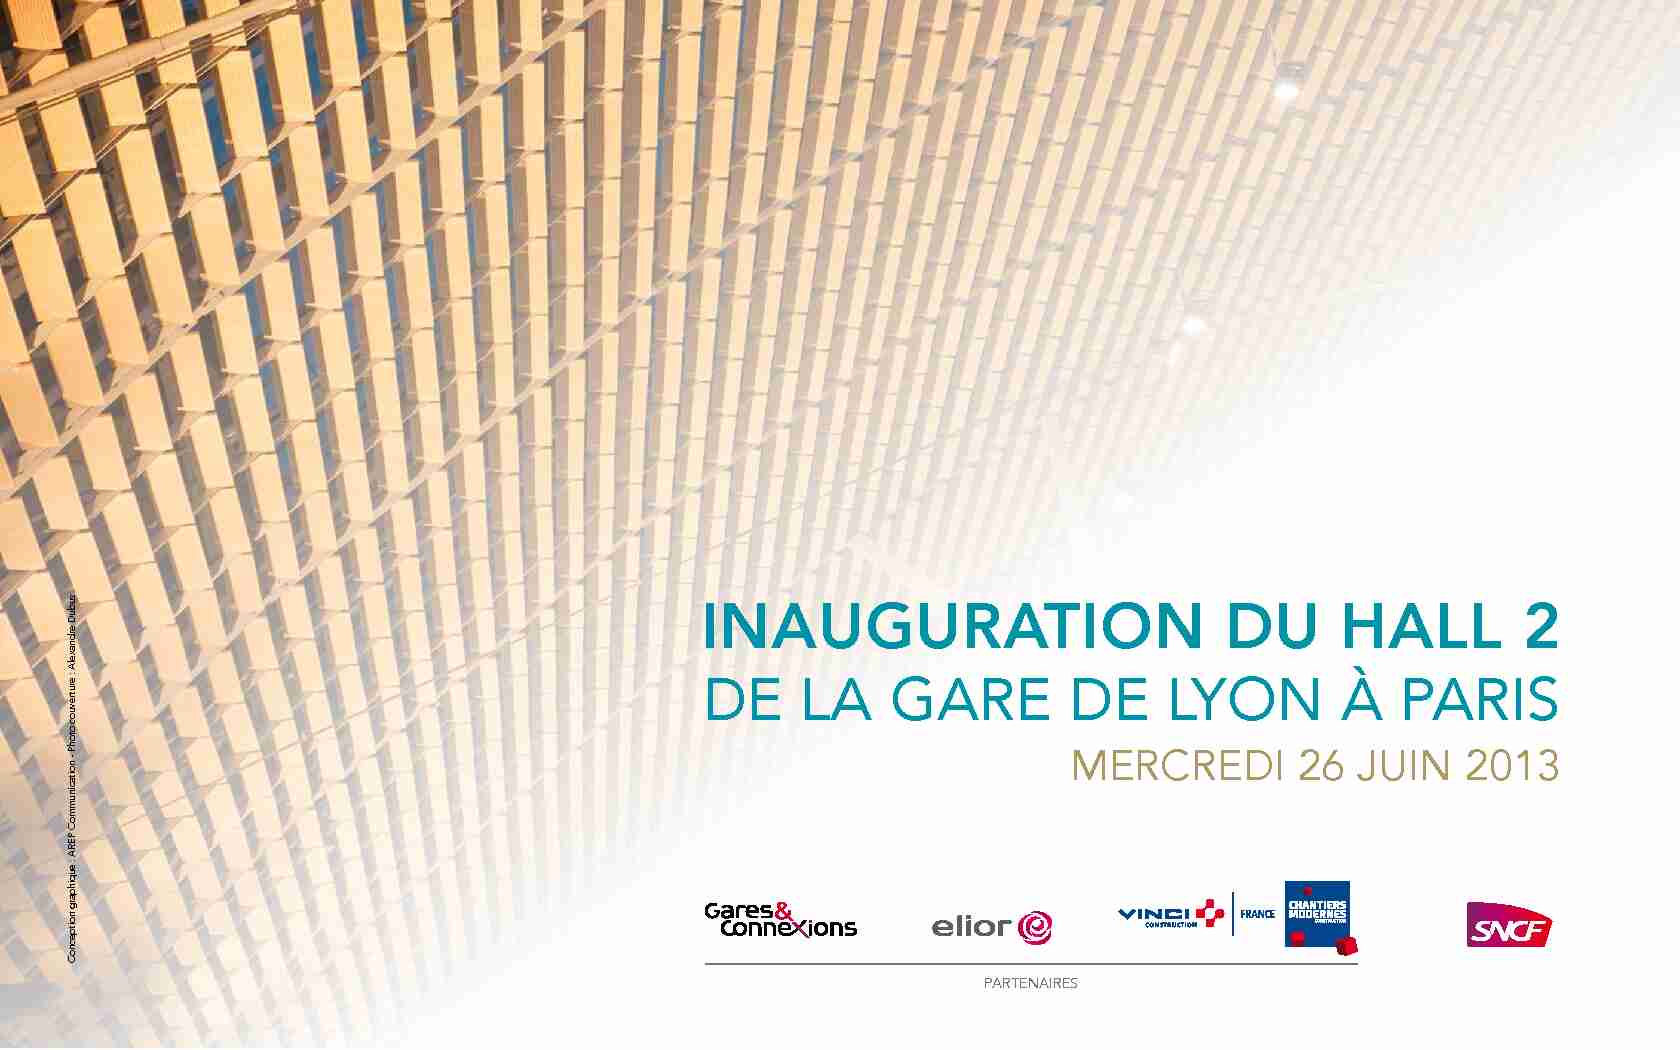 [PDF] Inauguration du hall 2 de la gare de Lyon à paris - Vinci